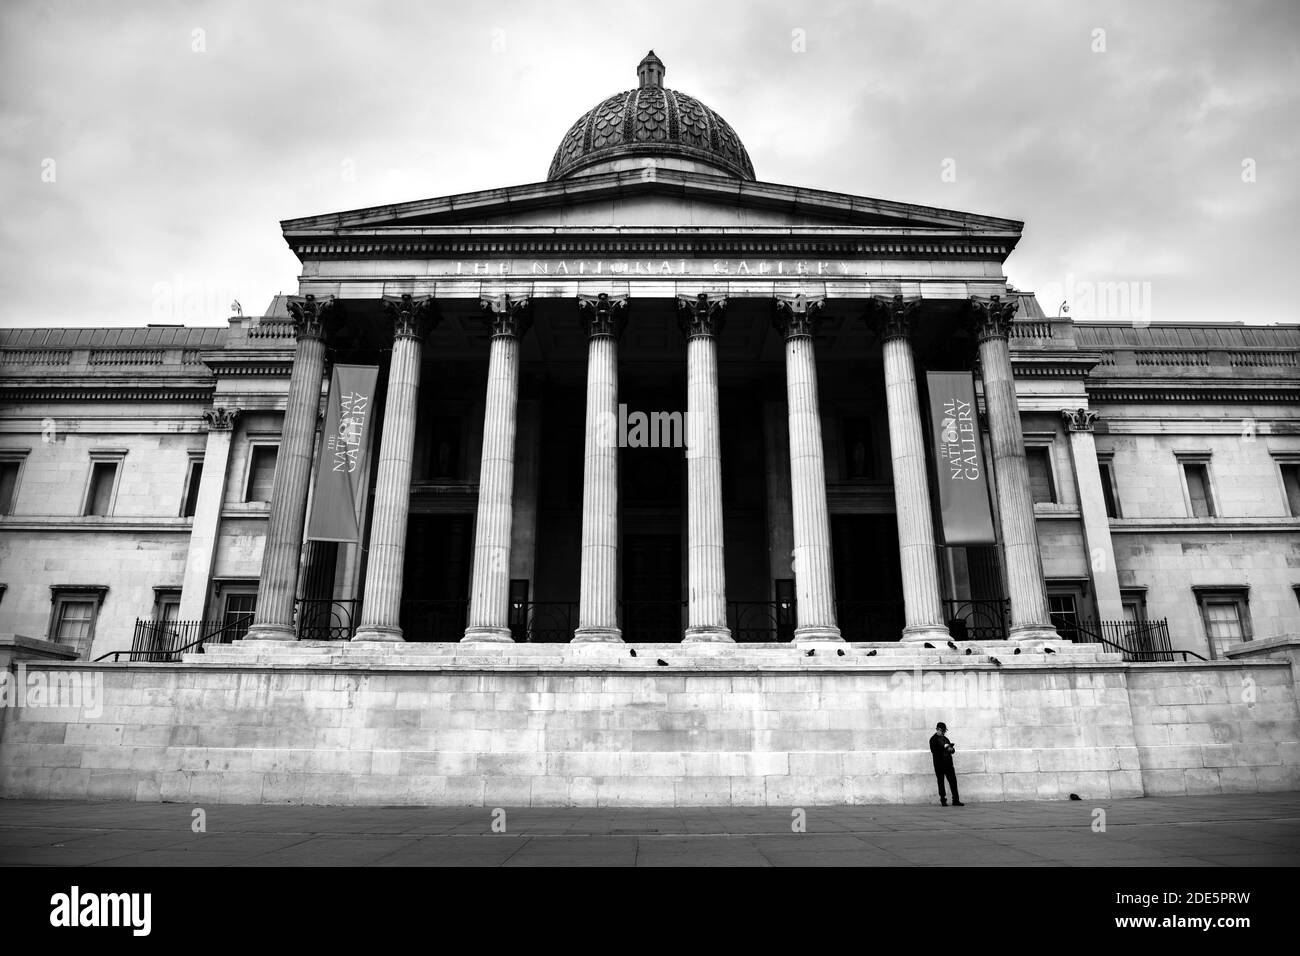 Schwarz-Weiß ruhig und leer Central London in Covid-19 Coronavirus-Sperre mit einer Person in der National Gallery am Trafalgar Square, eine beliebte Touristenattraktion in England, Großbritannien Stockfoto